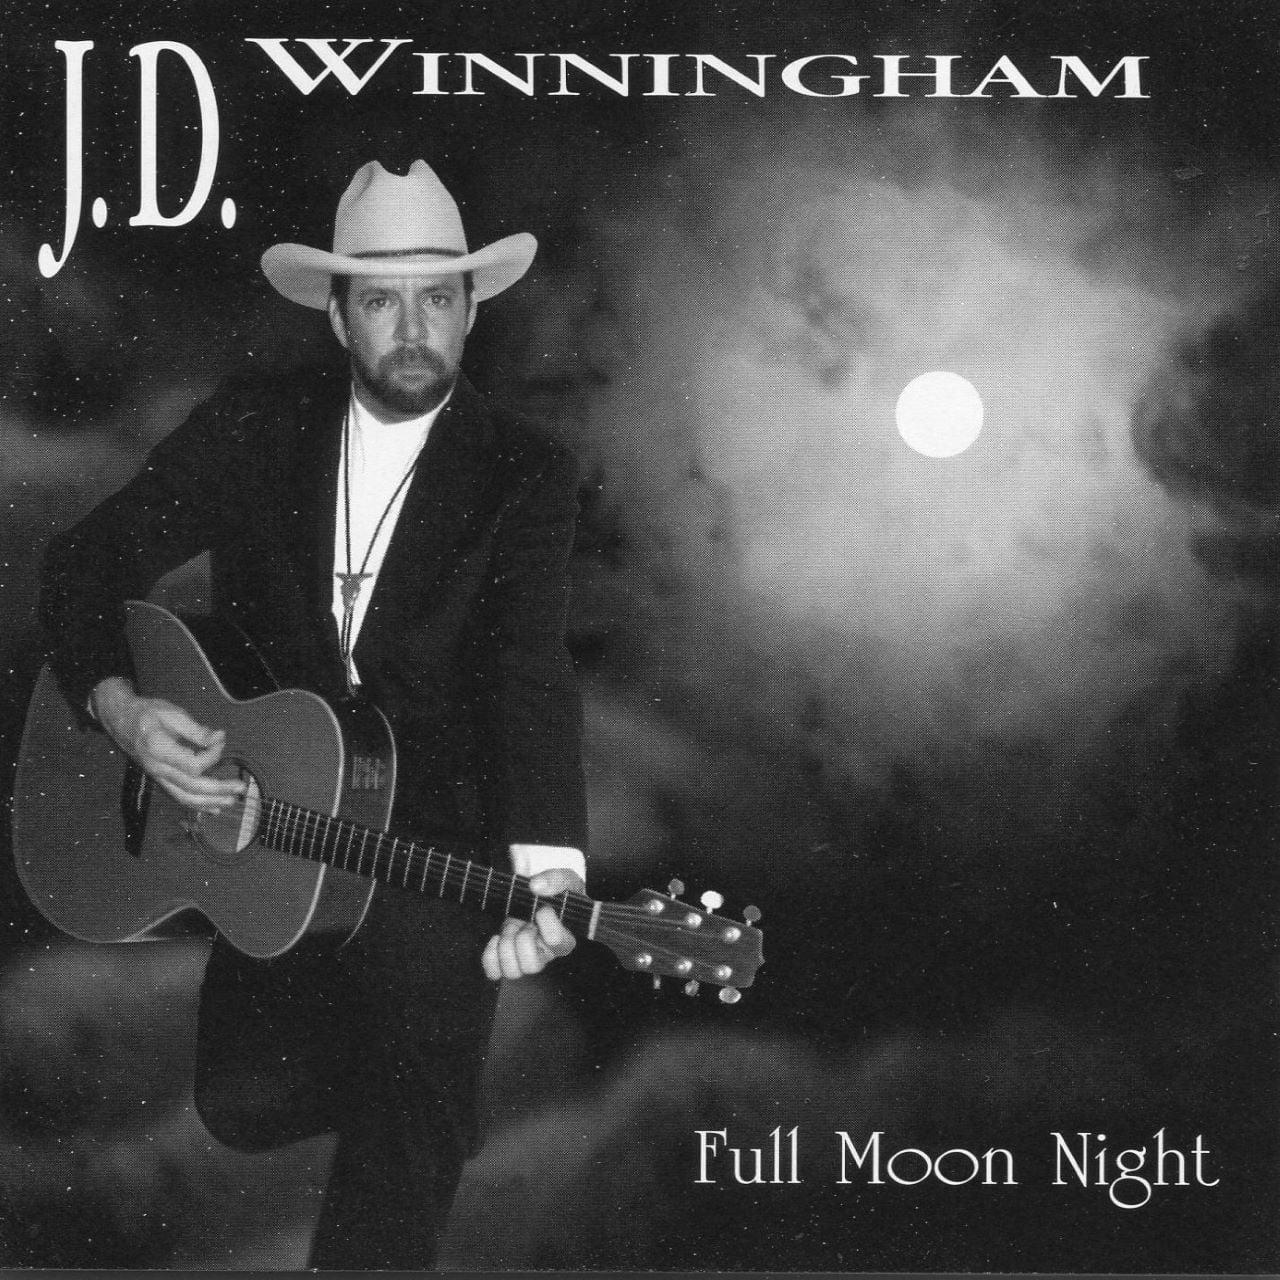 J.D. Winningham - Full Moon Night cover album